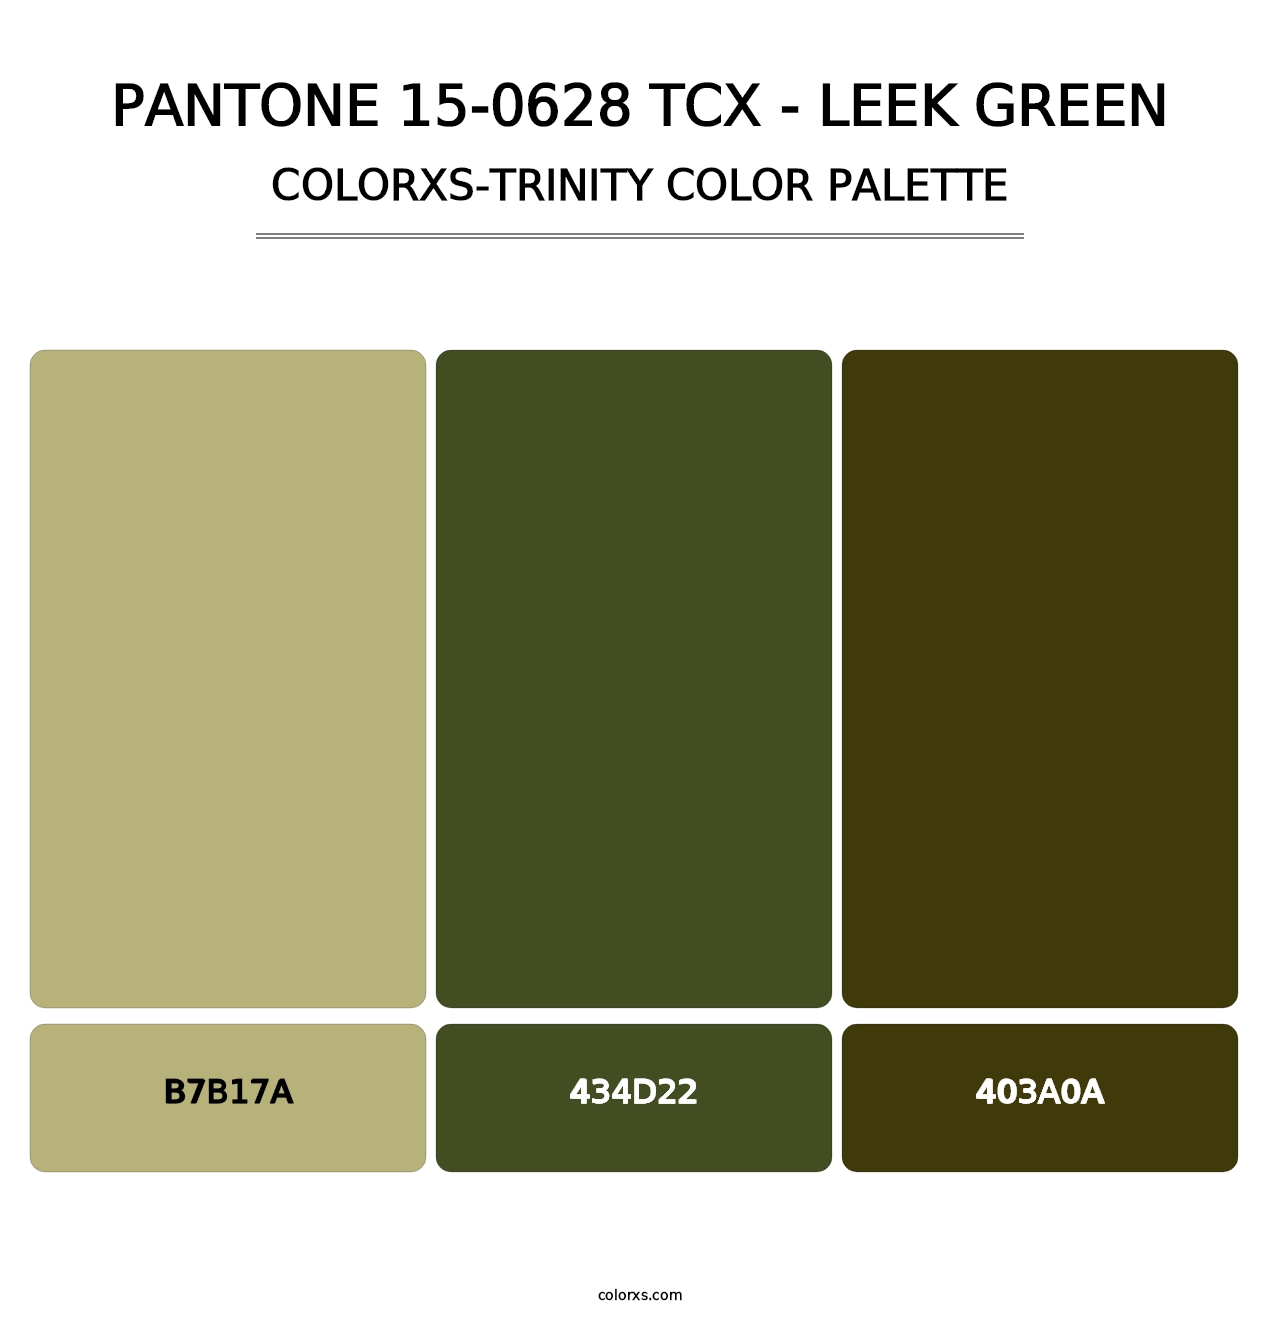 PANTONE 15-0628 TCX - Leek Green - Colorxs Trinity Palette